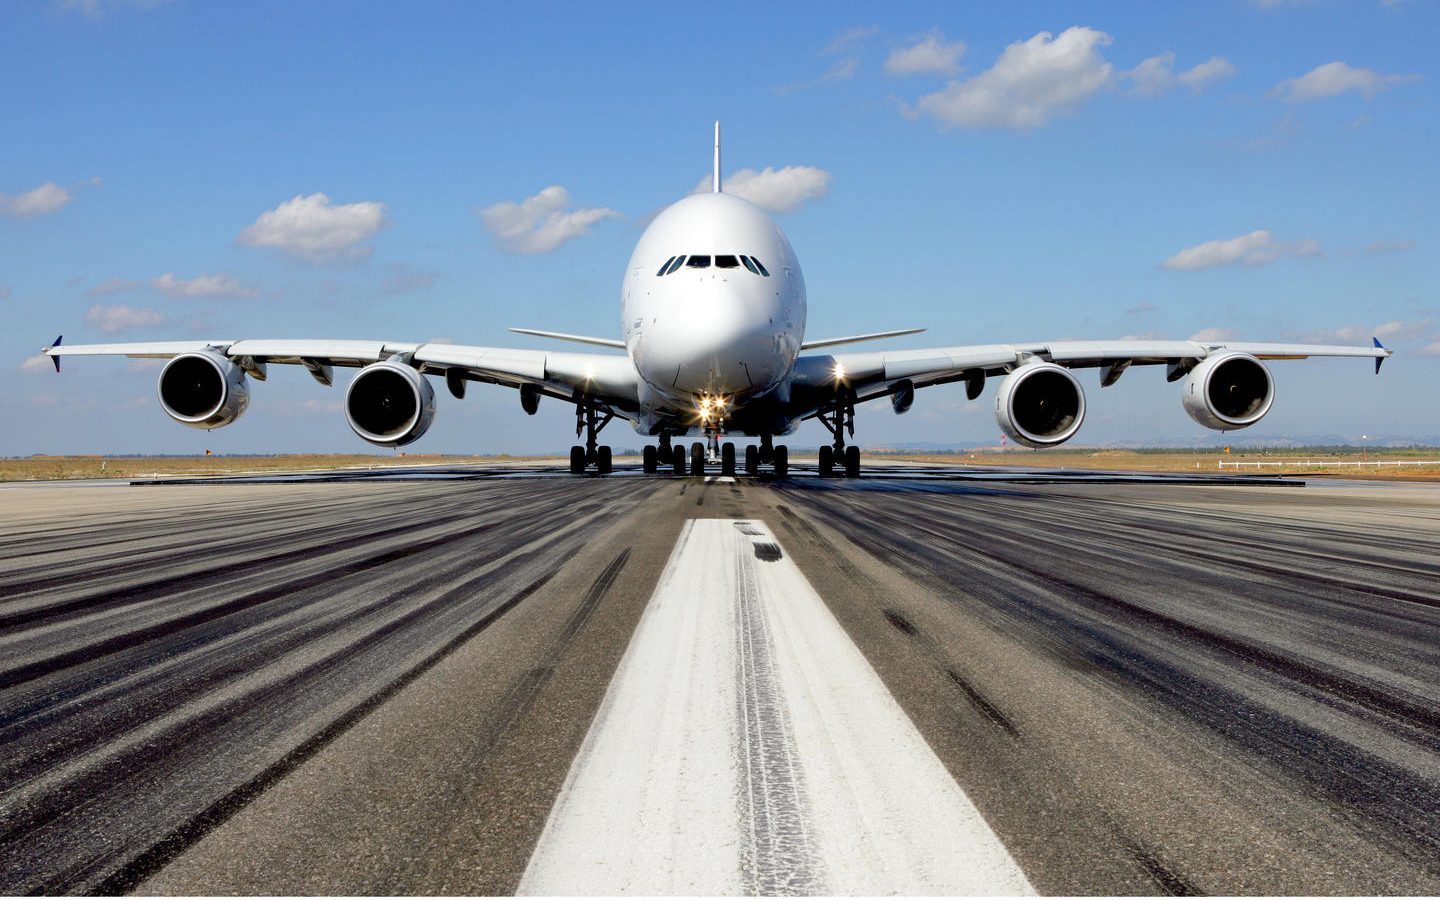 Erbas prodaje delove ikone vazdušnog saobraćaja, Superdžamba A380: Objavljeni datumi aukcije